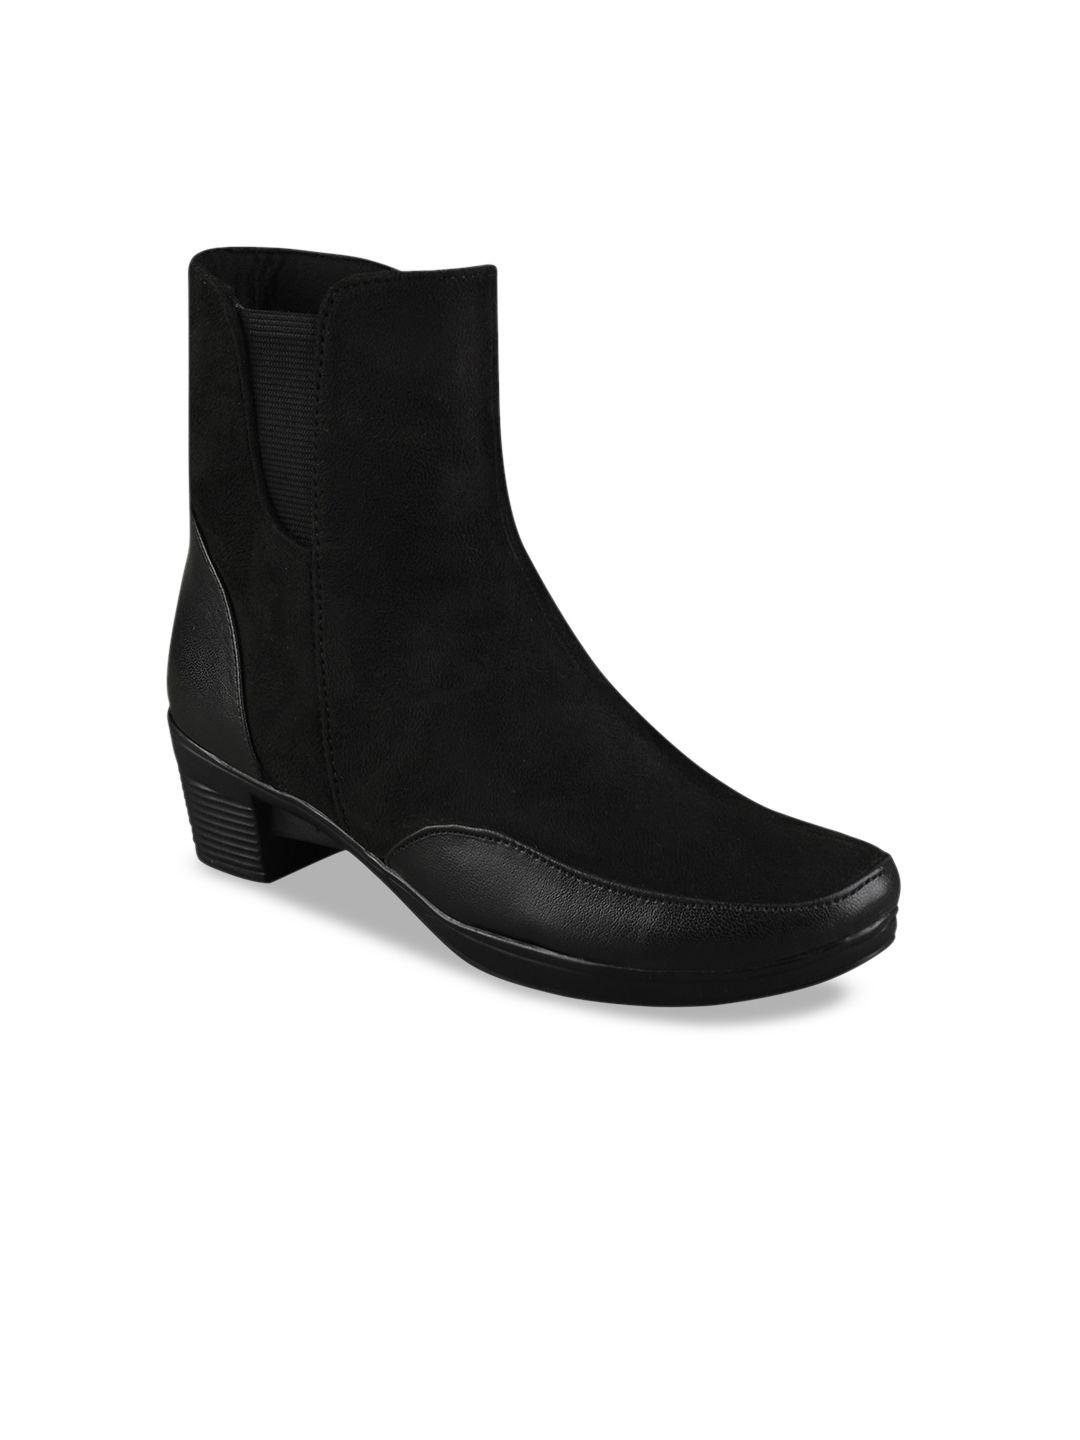 shoetopia girls mid top pointed toe block heel regular boots